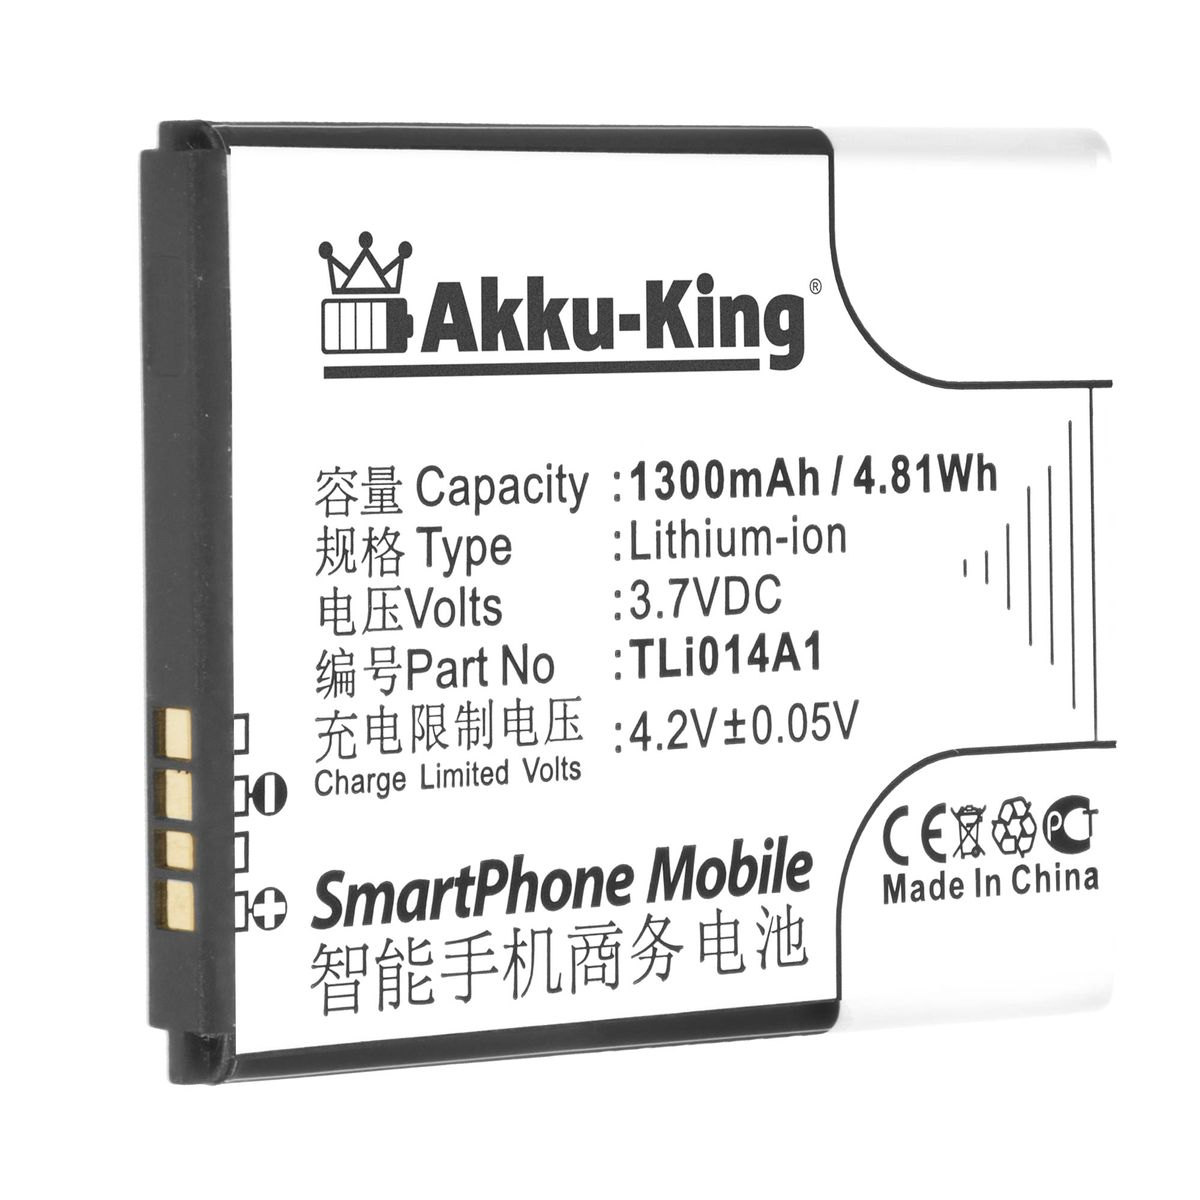 AKKU-KING Akku für Handy-Akku, Tli014A1 Volt, 1300mAh Alcatet Li-Ion 3.7